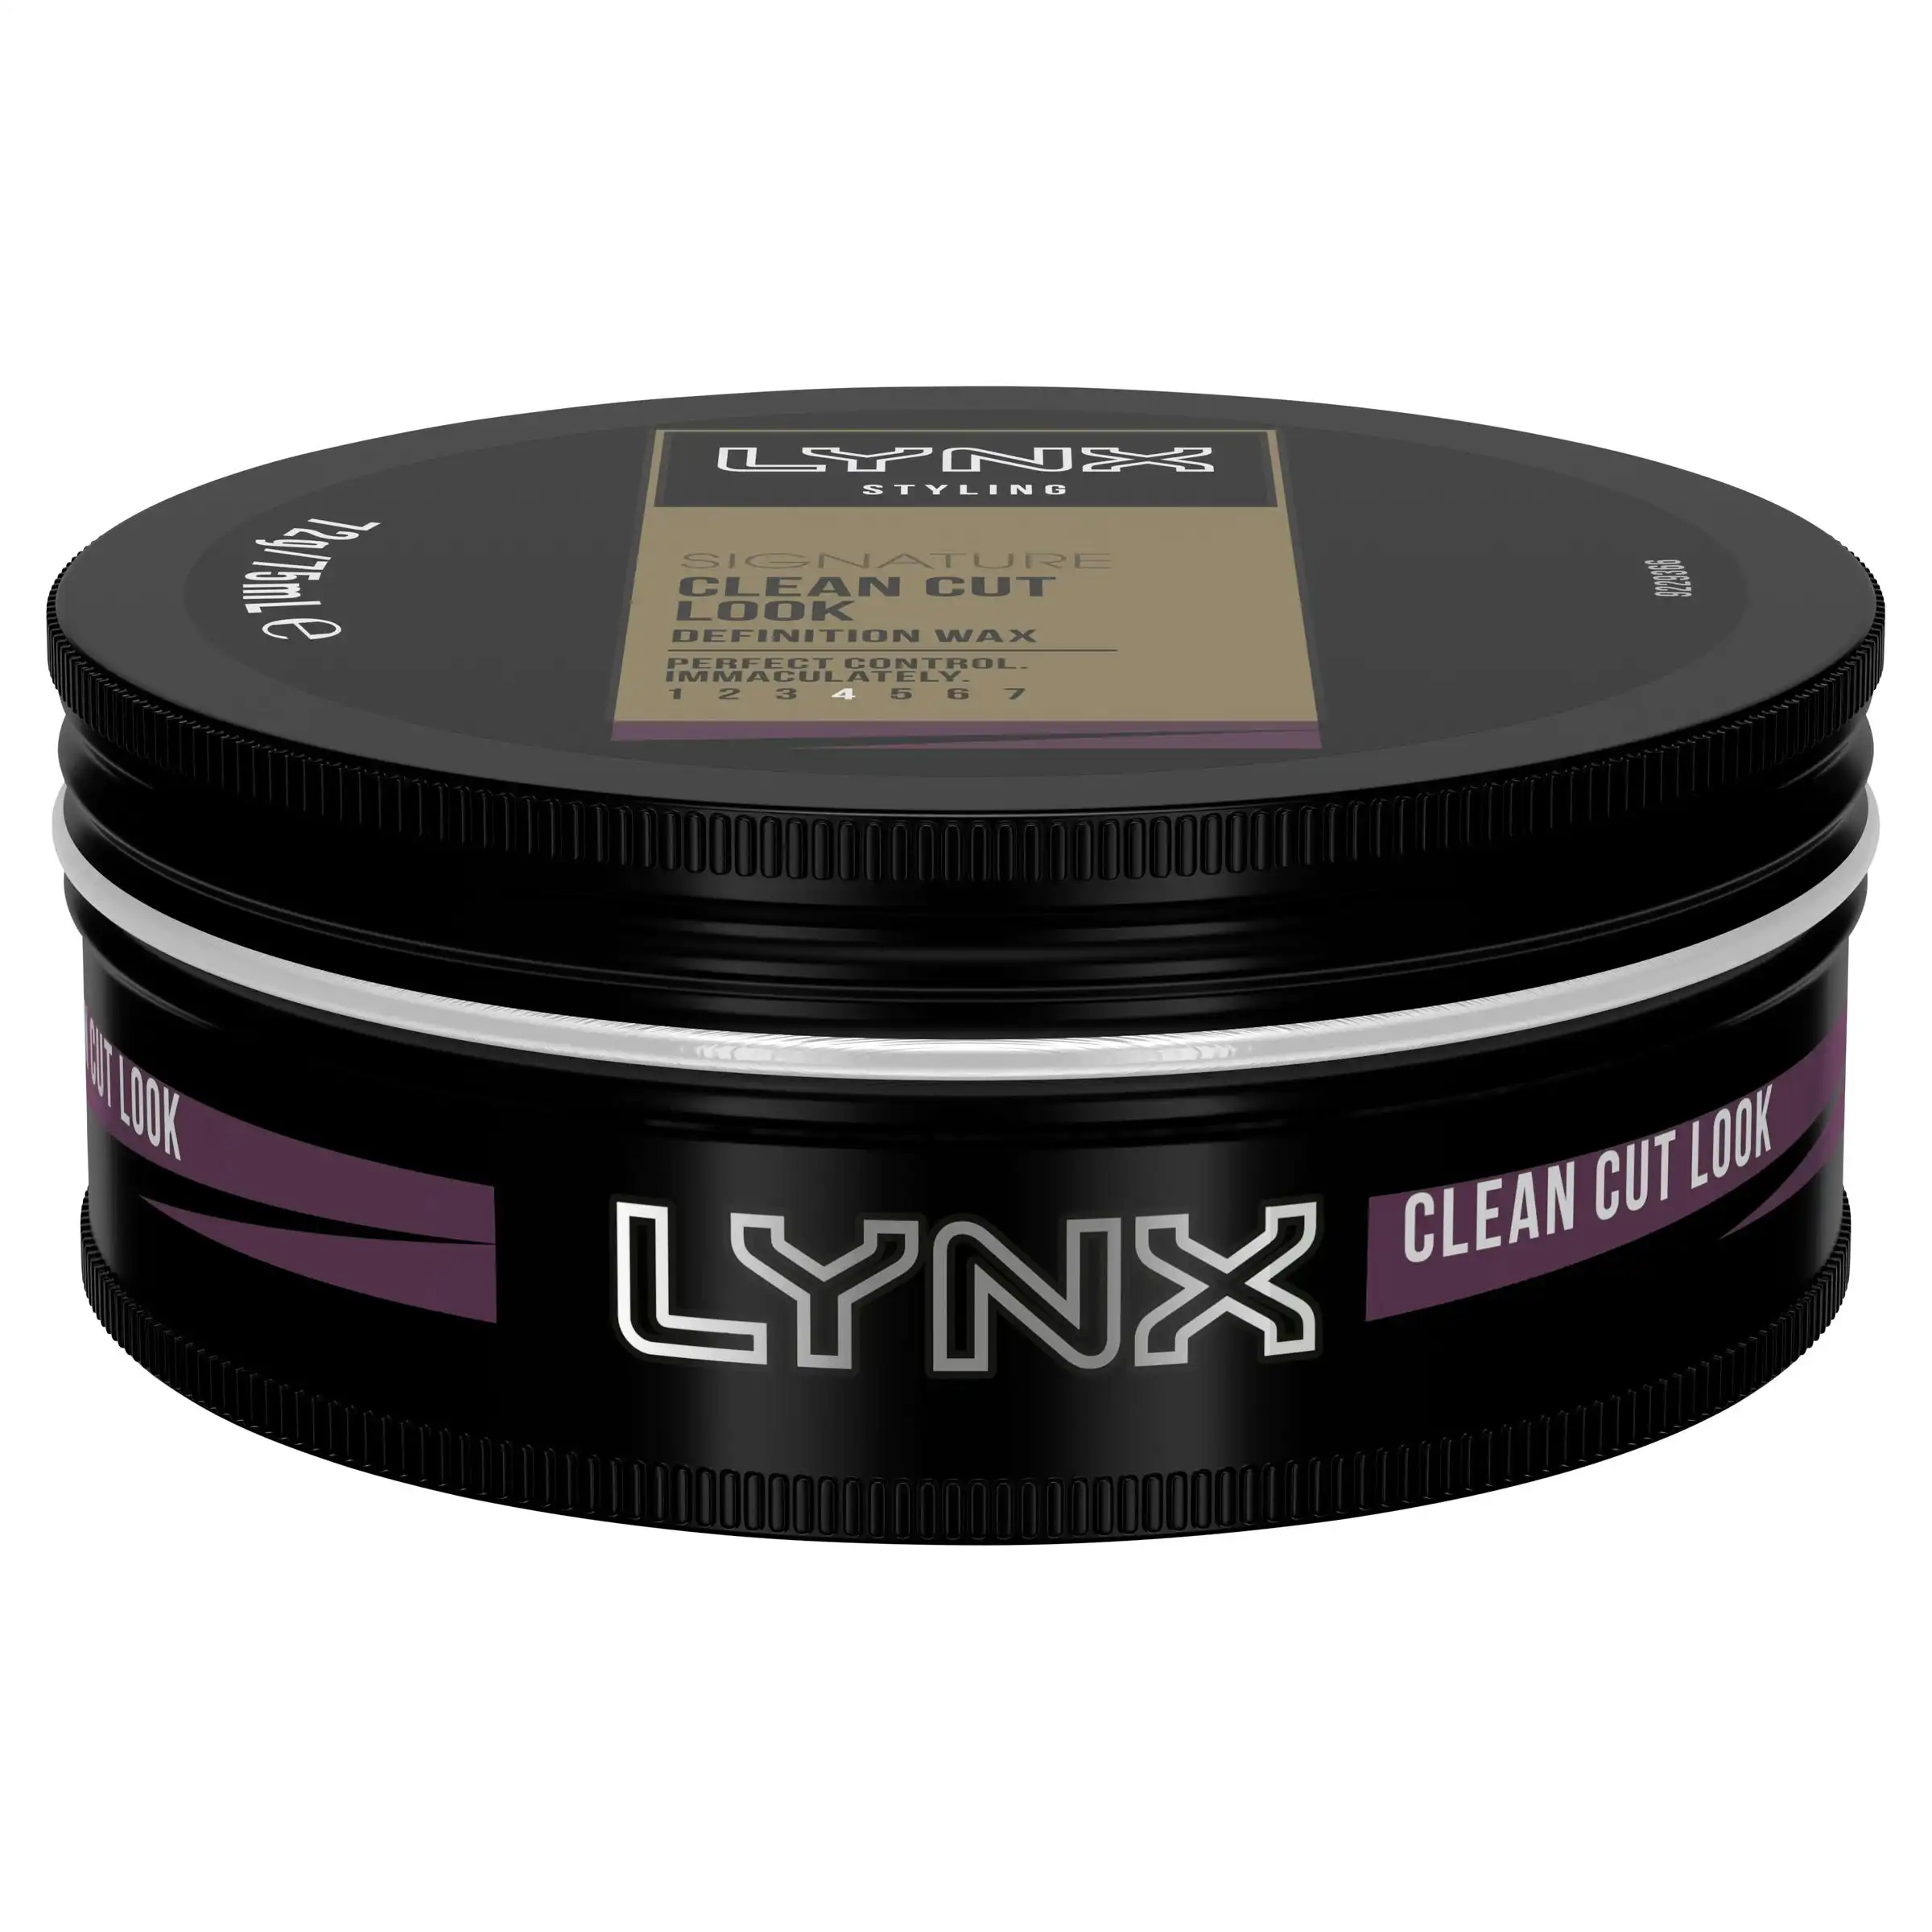 Lynx Hair Styling Wax Clean Cut Look 75ml